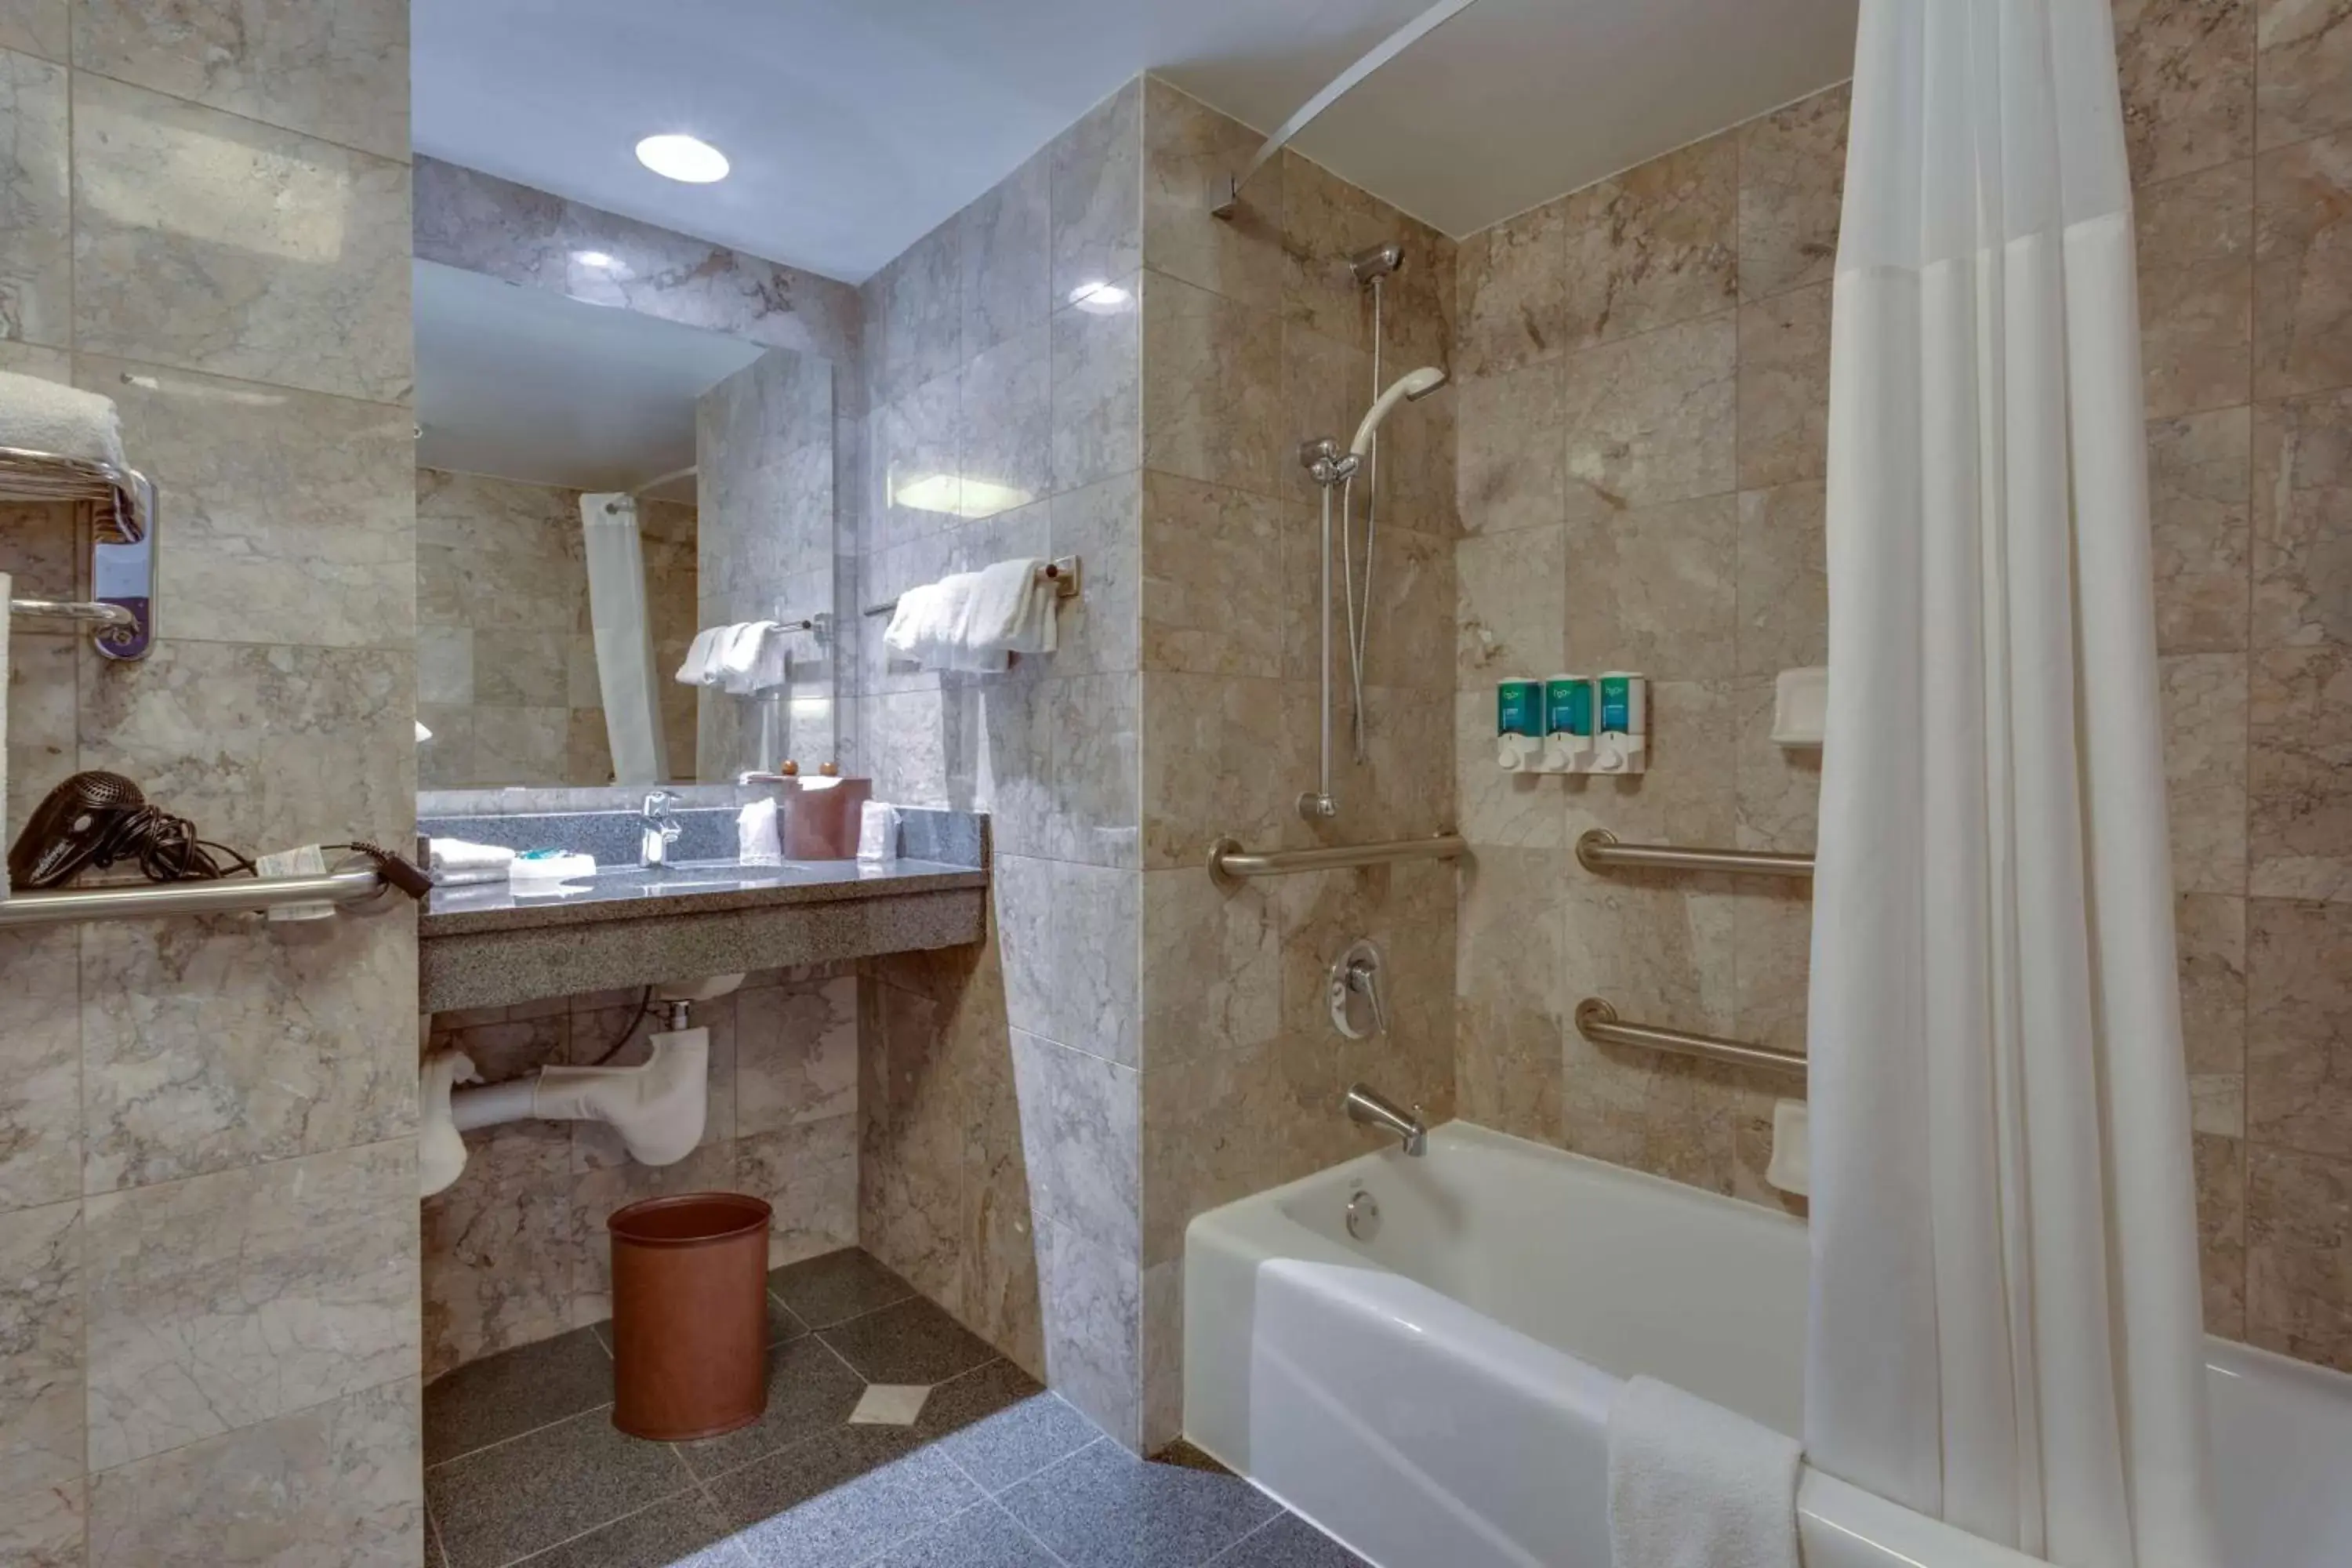 Bathroom in Drury Inn & Suites Overland Park